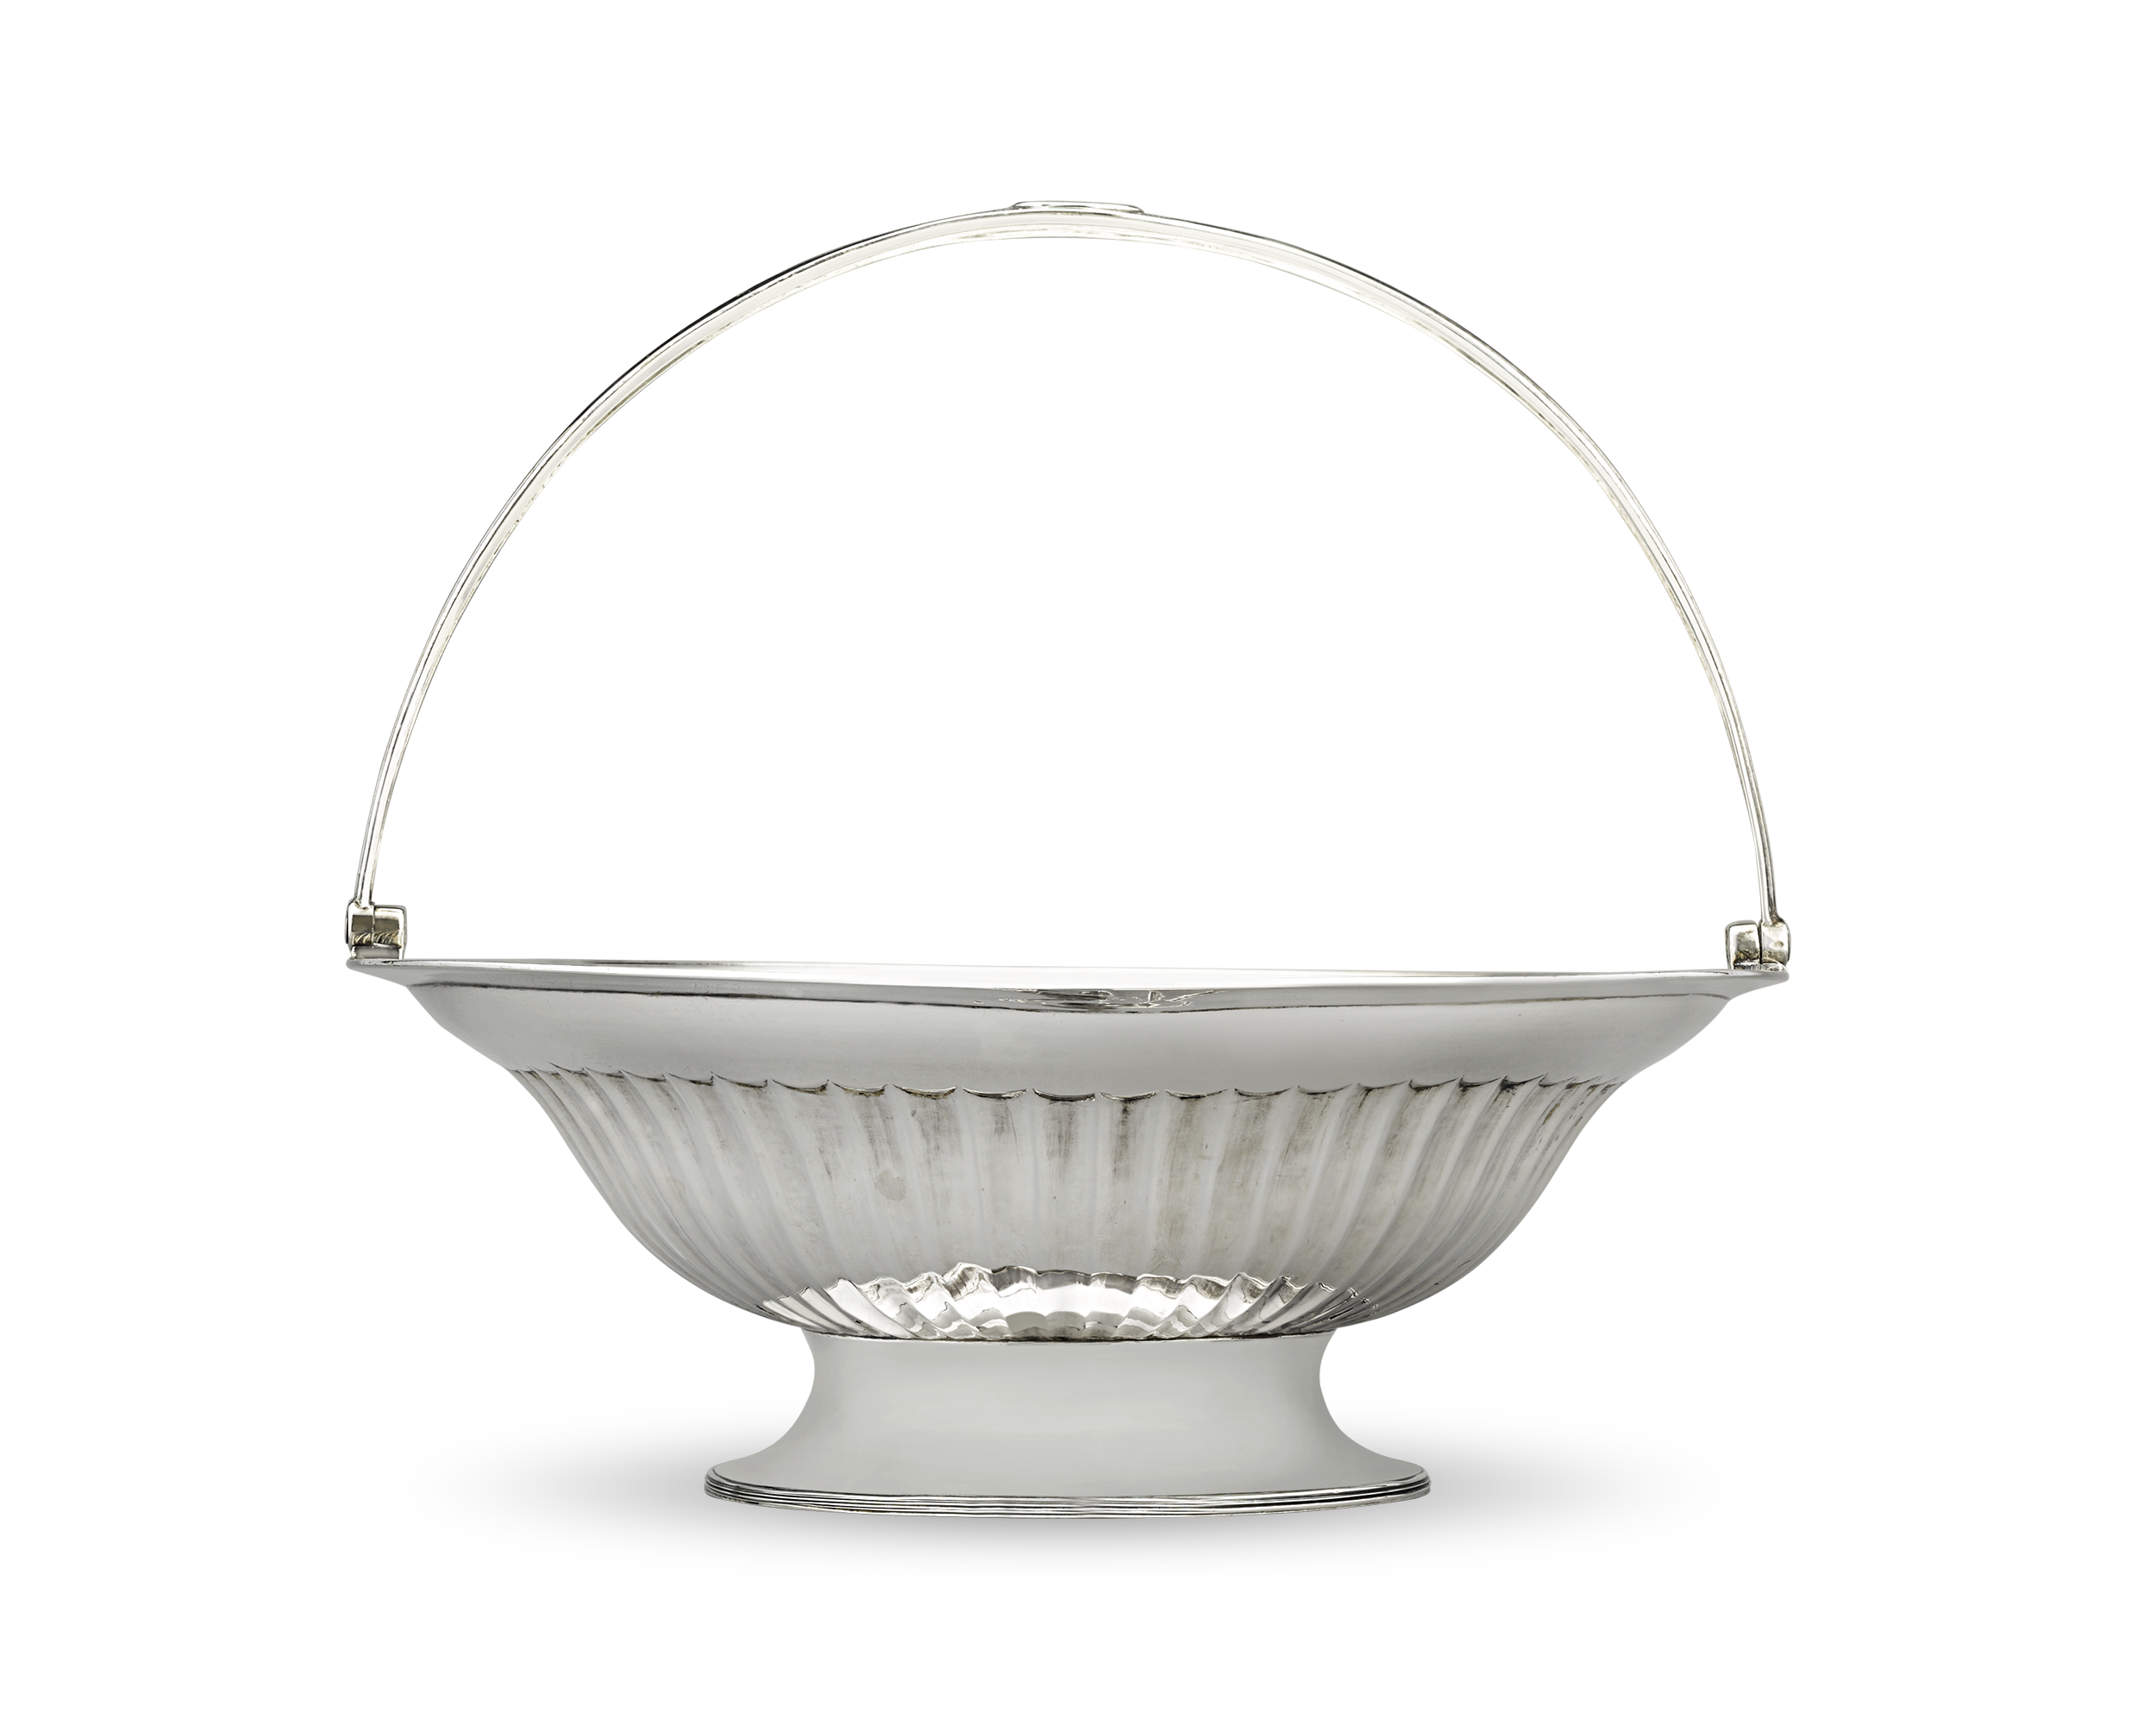 Regency Silver Basket by Robert Hennell II